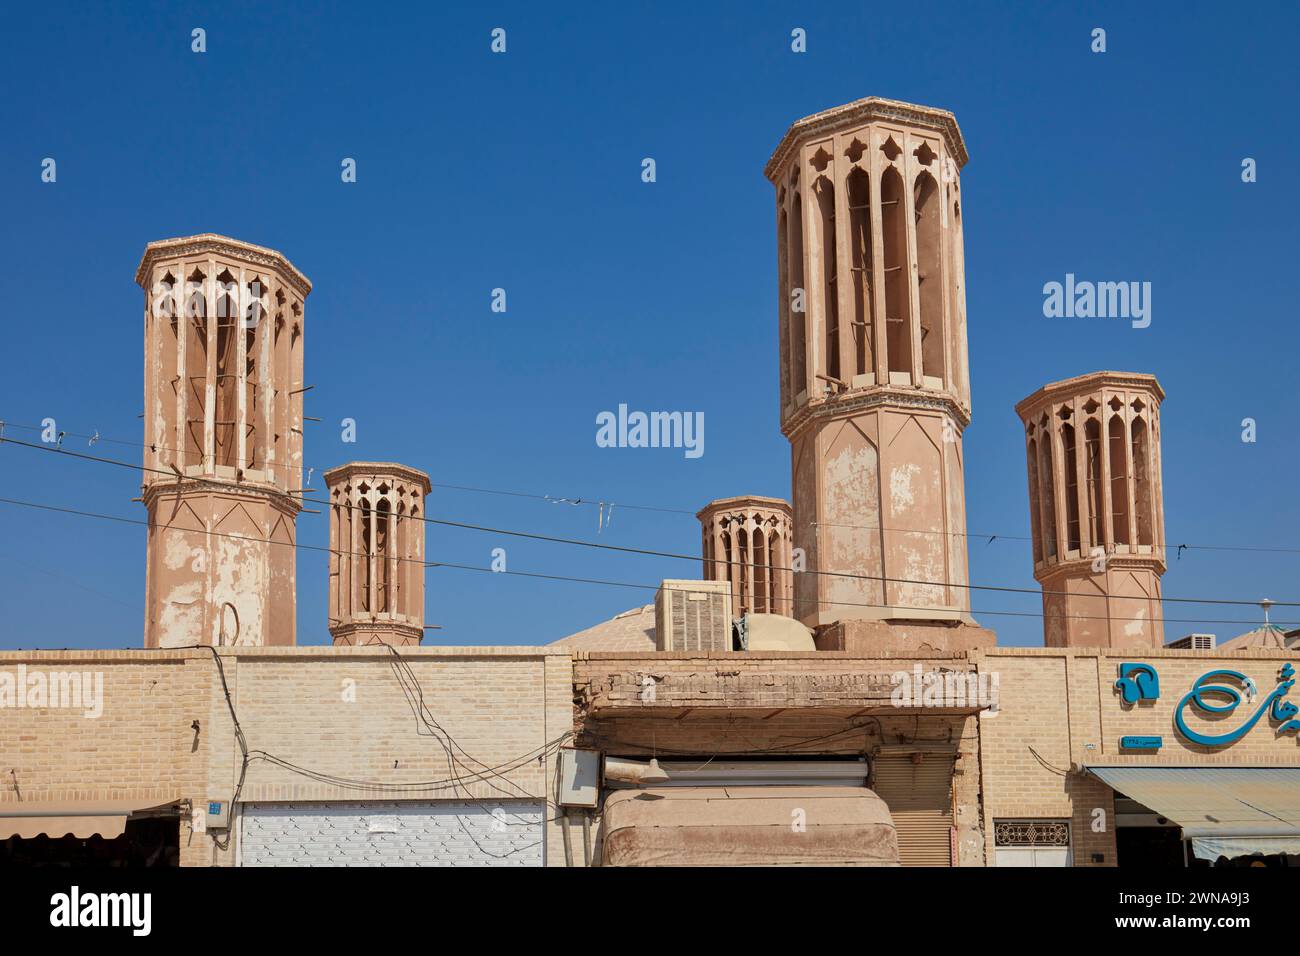 Die Windfänger - traditionelle Türme für Querbelüftung und passive Kühlung von Gebäuden. Yazd, Iran. Stockfoto